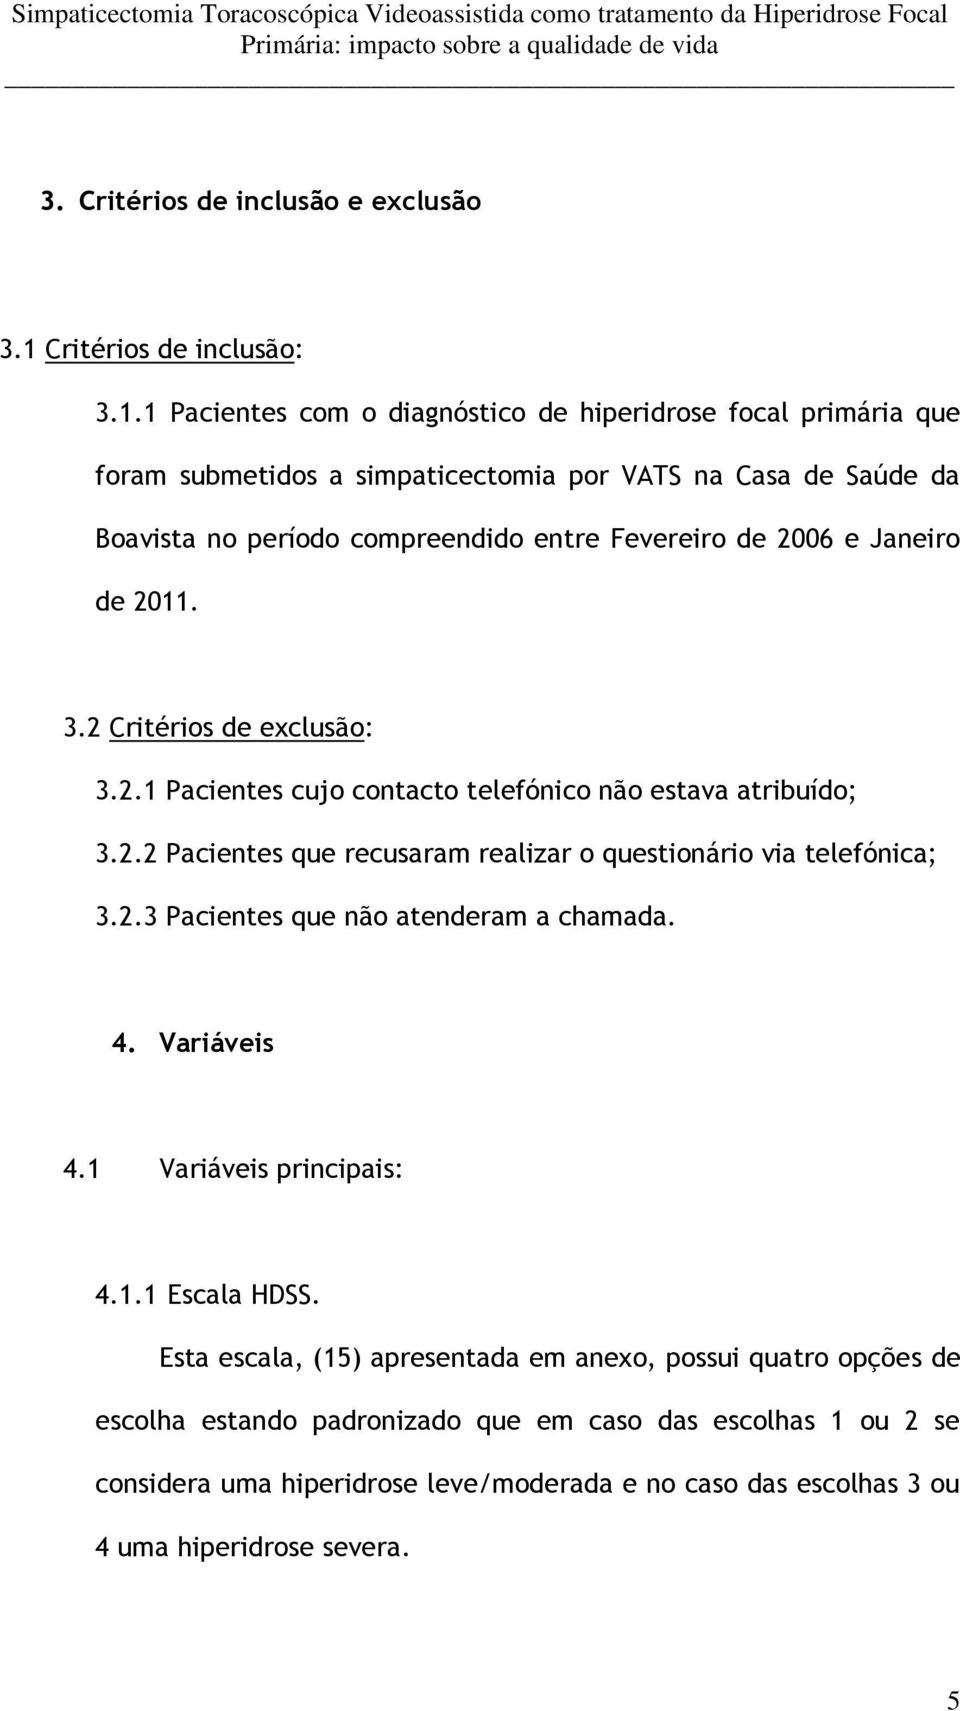 1 Pacientes com o diagnóstico de hiperidrose focal primária que foram submetidos a simpaticectomia por VATS na Casa de Saúde da Boavista no período compreendido entre Fevereiro de 2006 e